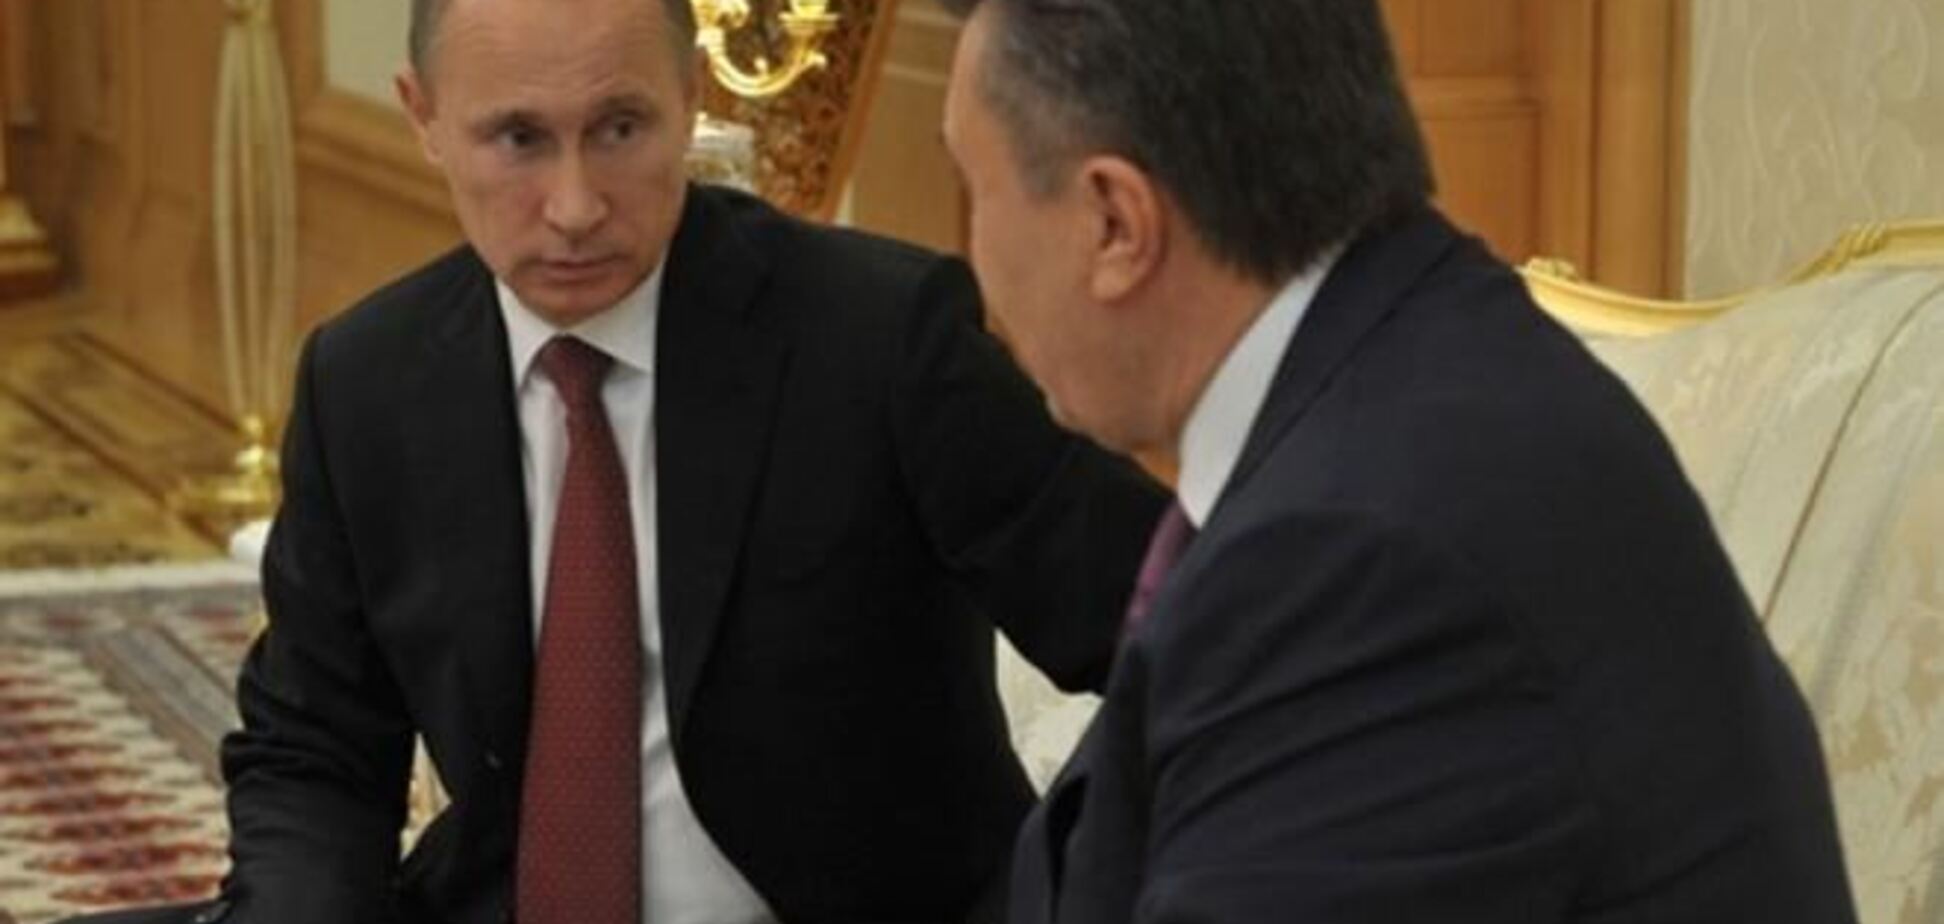 Опозиція вимагає звіту про переговори Януковича і Путіна в Сочі